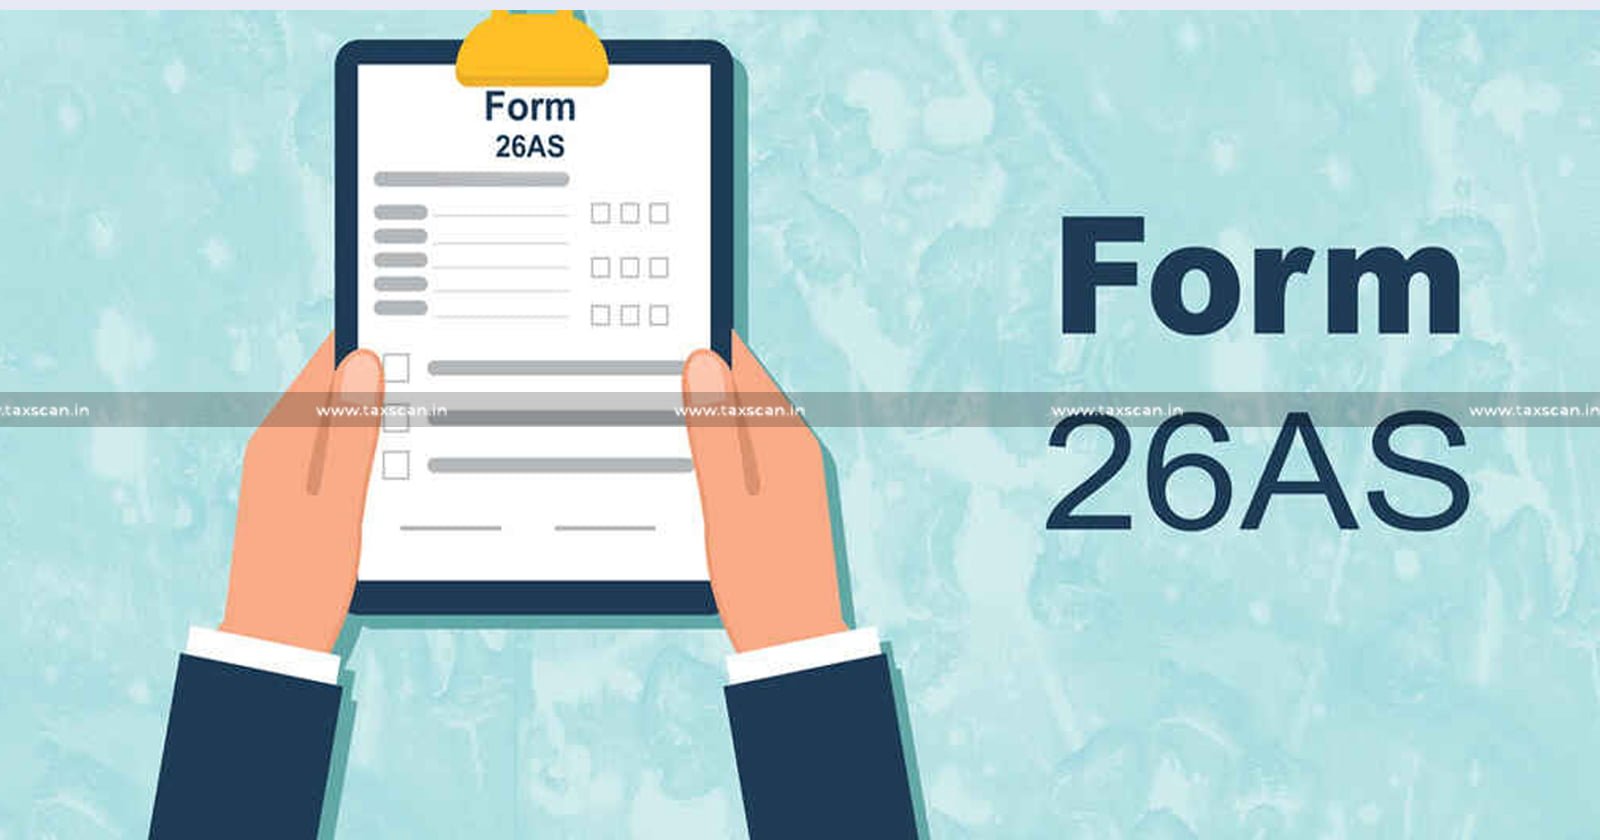 Annual Tax Statement - Form 26AS - Annual Tax - Tax - Tax Statement - Taxscan